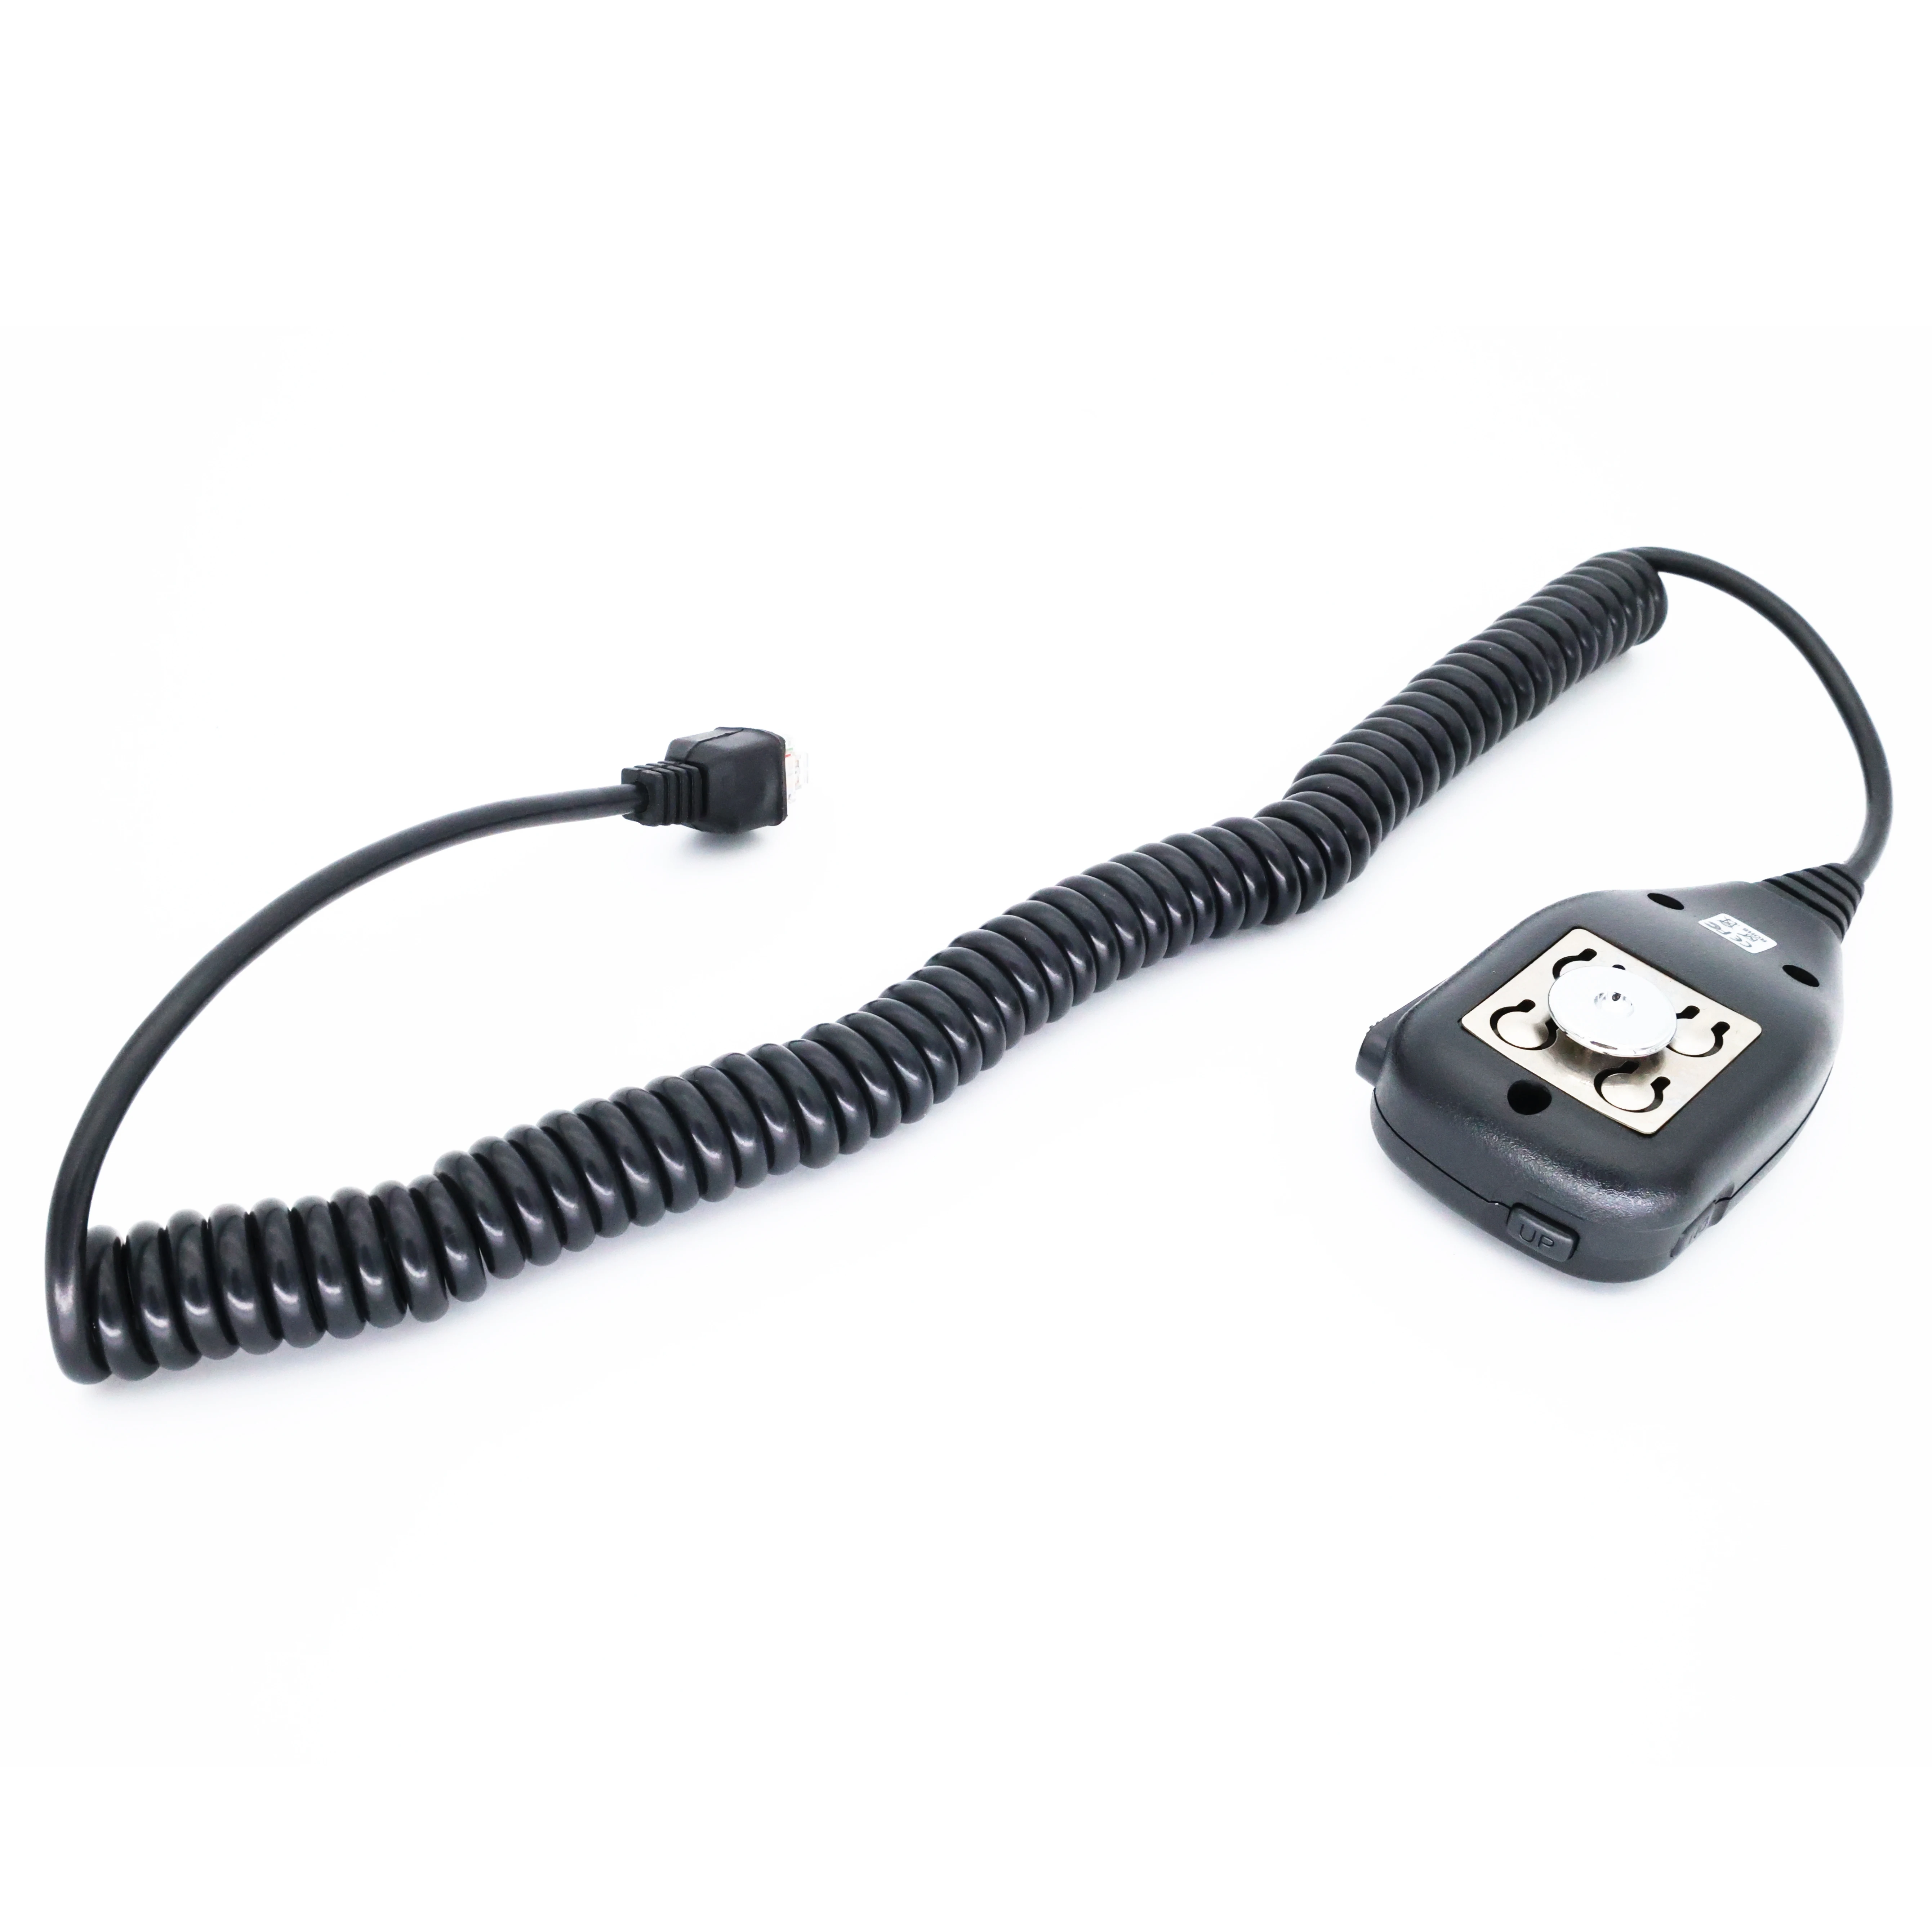 Leixen מיקרופון עבור טלפונים שני רדיו דרך VV-898S 25W VV-808 הווקי טוקי - 4